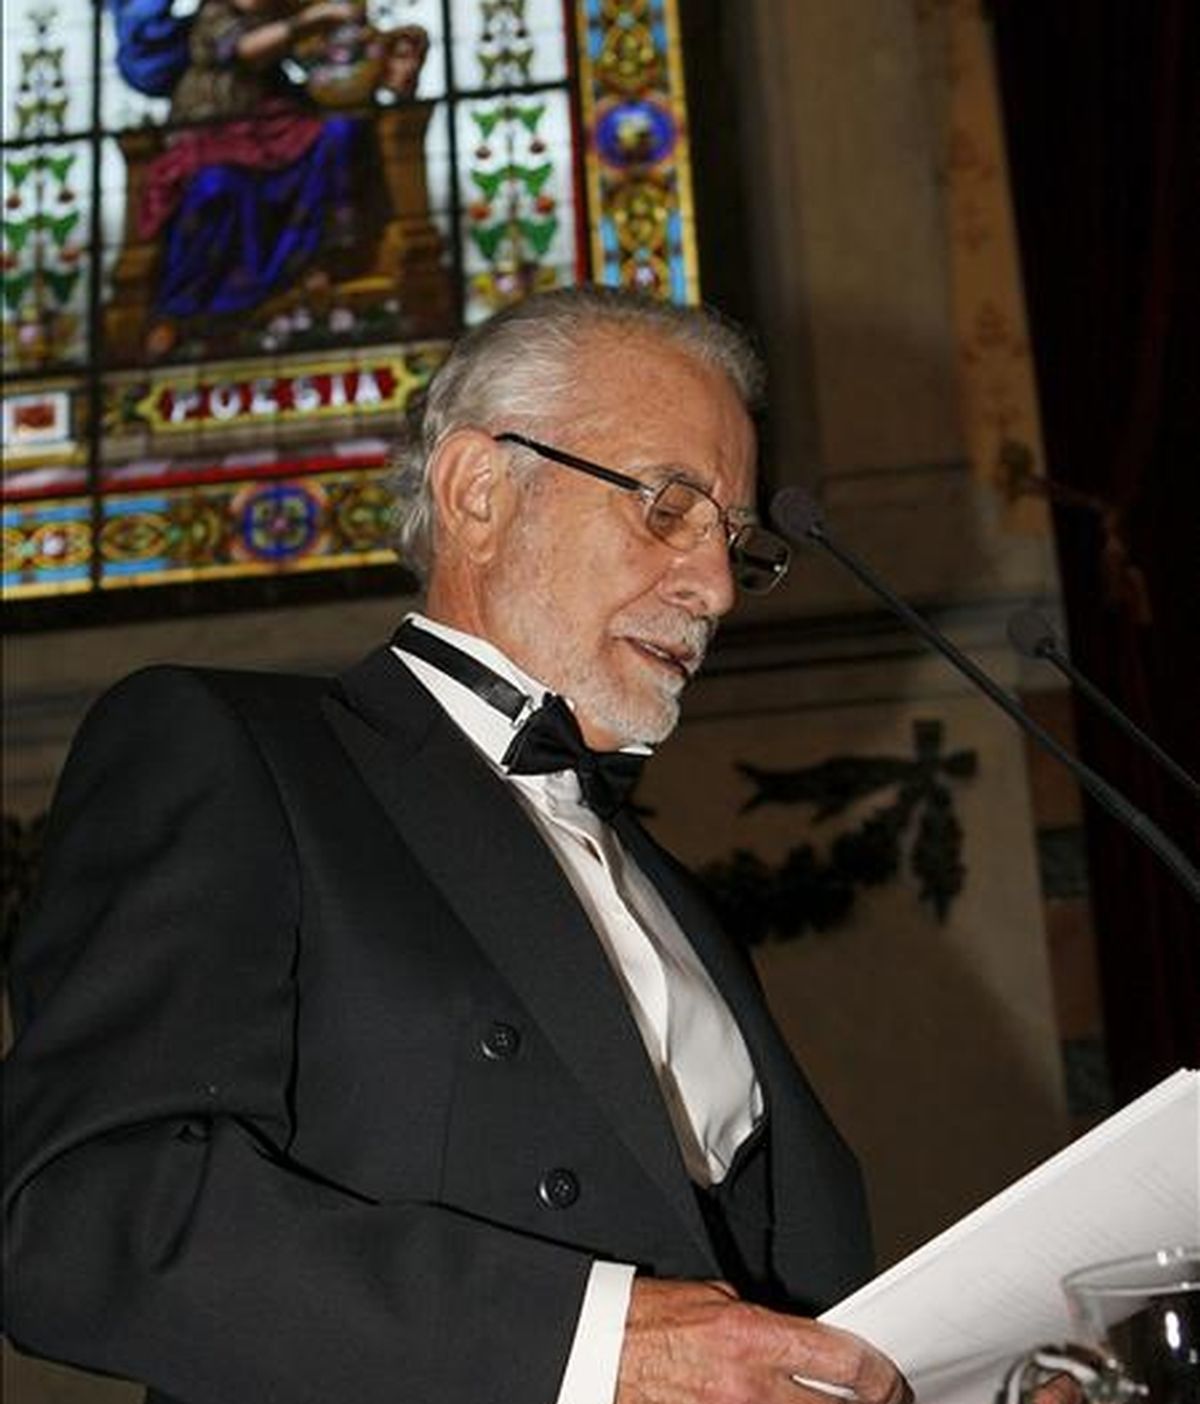 El escritor José María Merino durante su discurso "Ficción de verdad" en el acto de su ingreso en la Real Academia Española que se celebró ayer  en Madrid. EFE